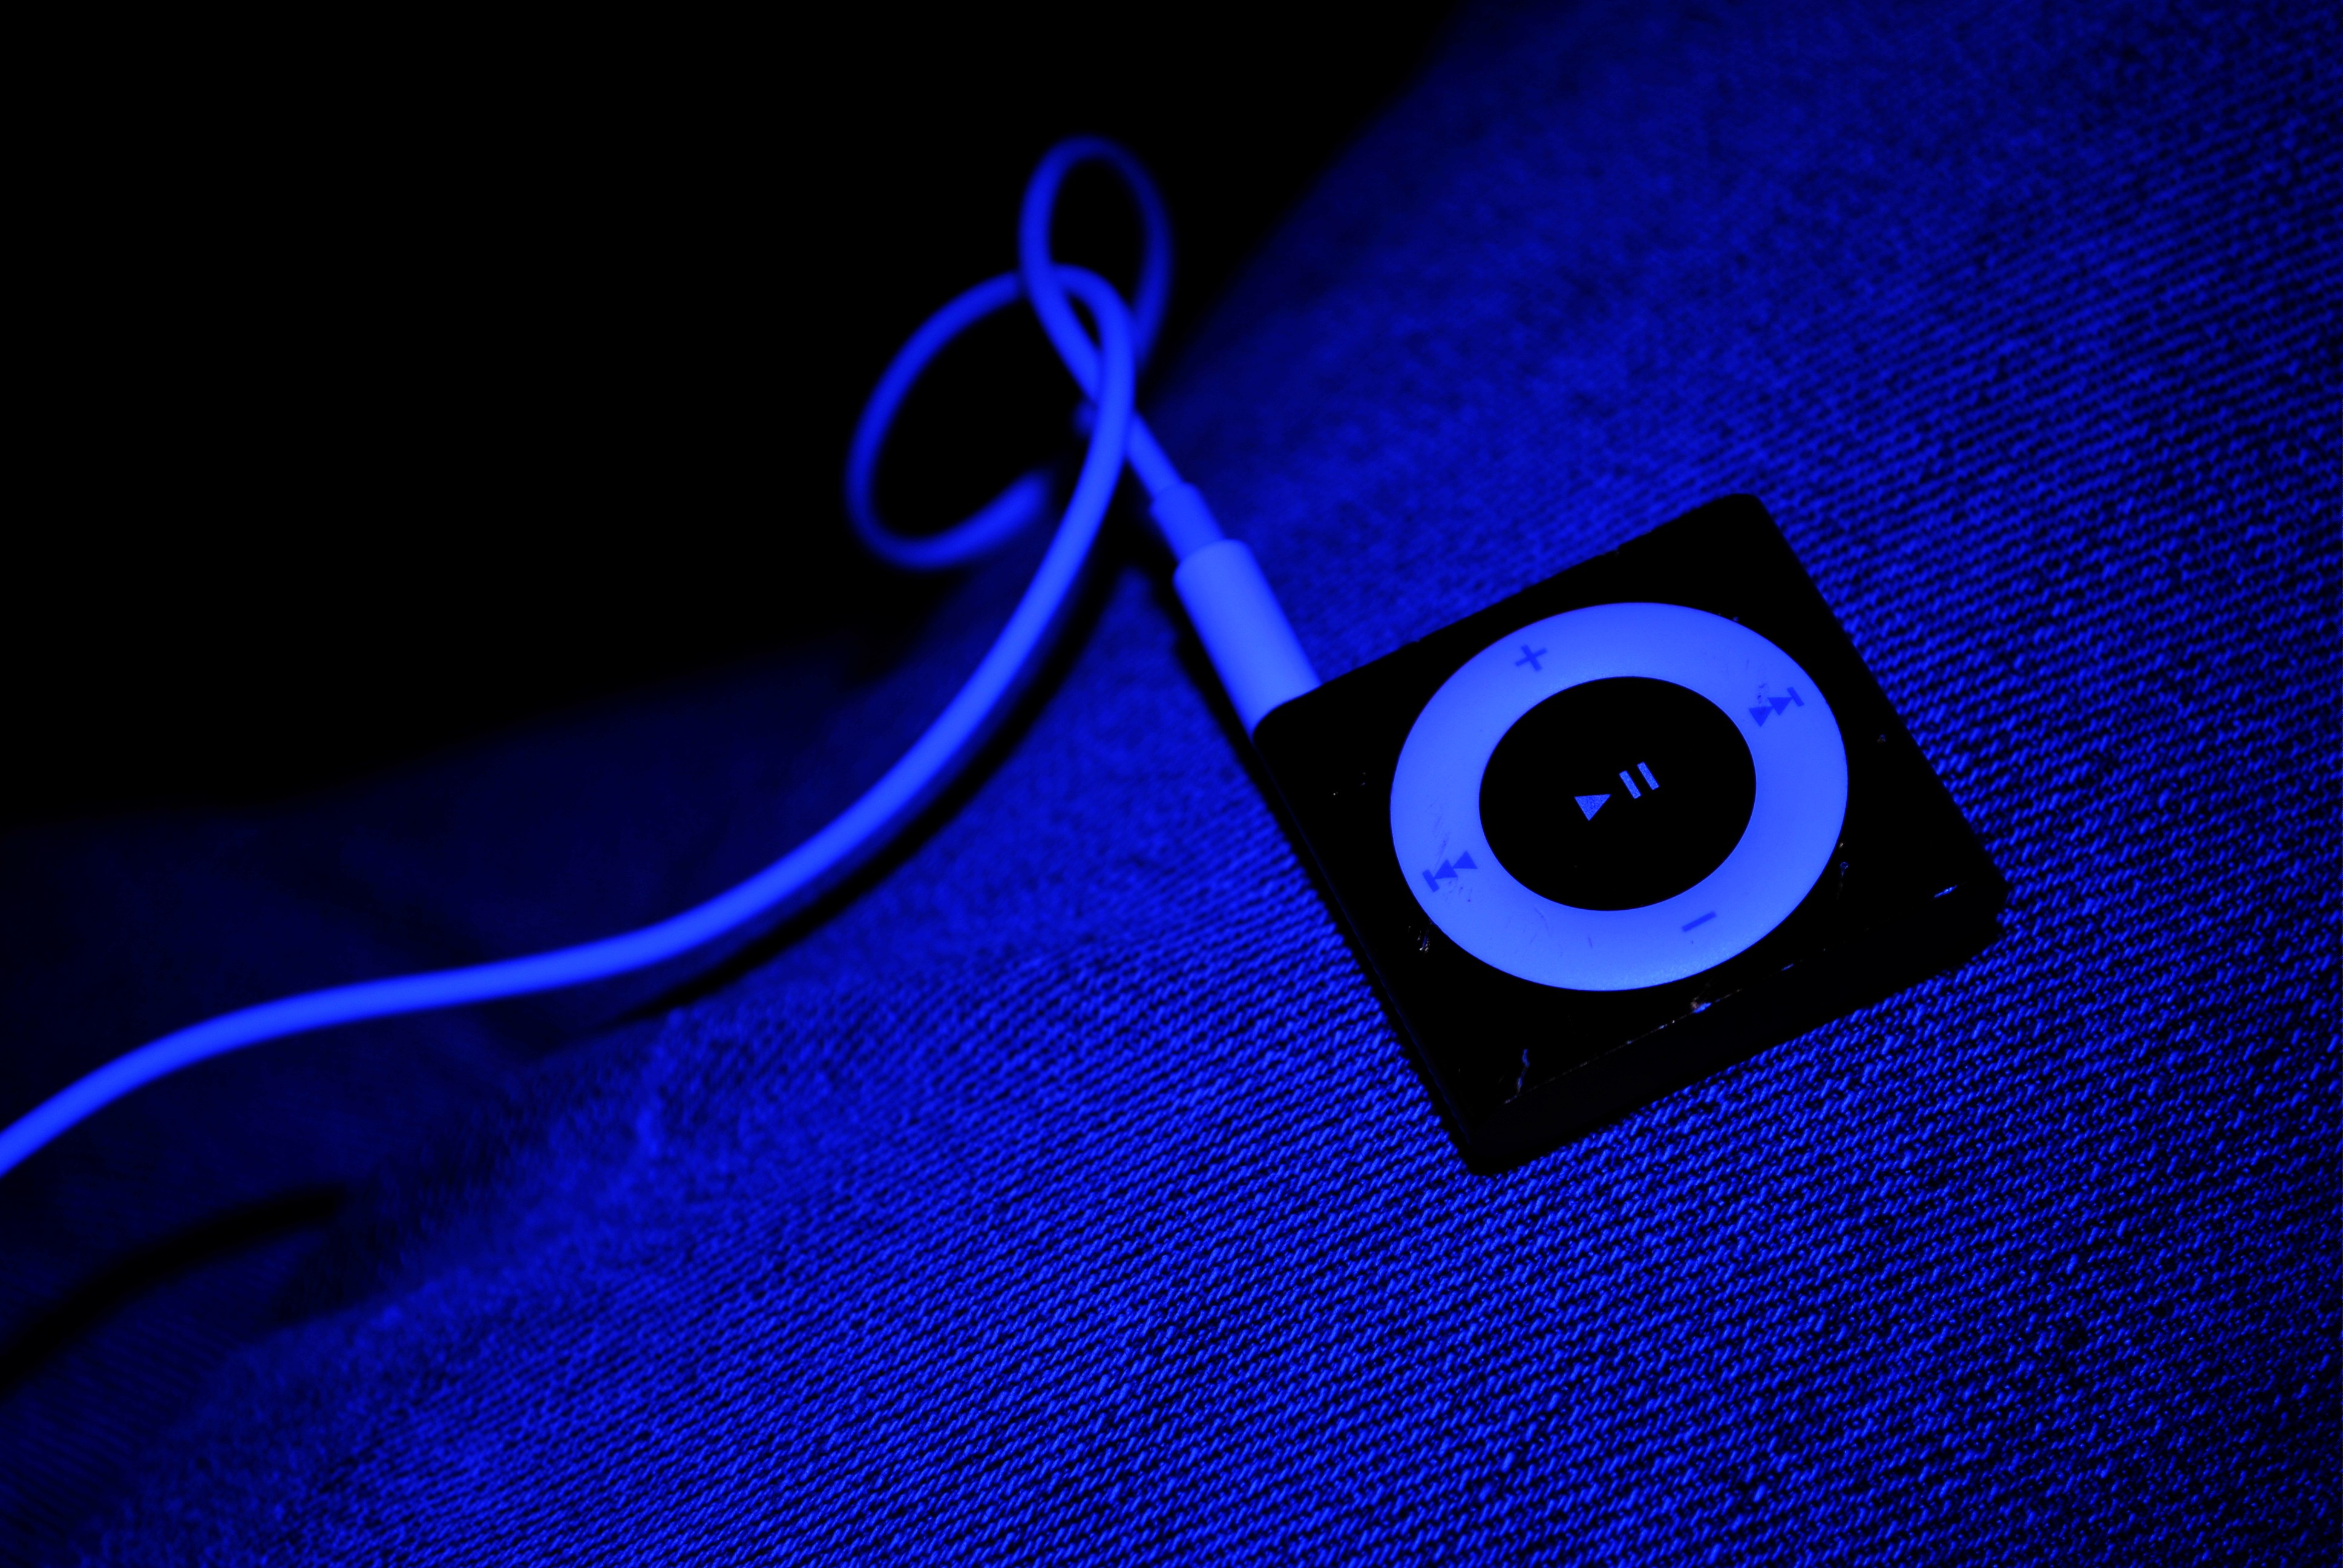 headphones, jeans, iPod, mp3 player - desktop wallpaper